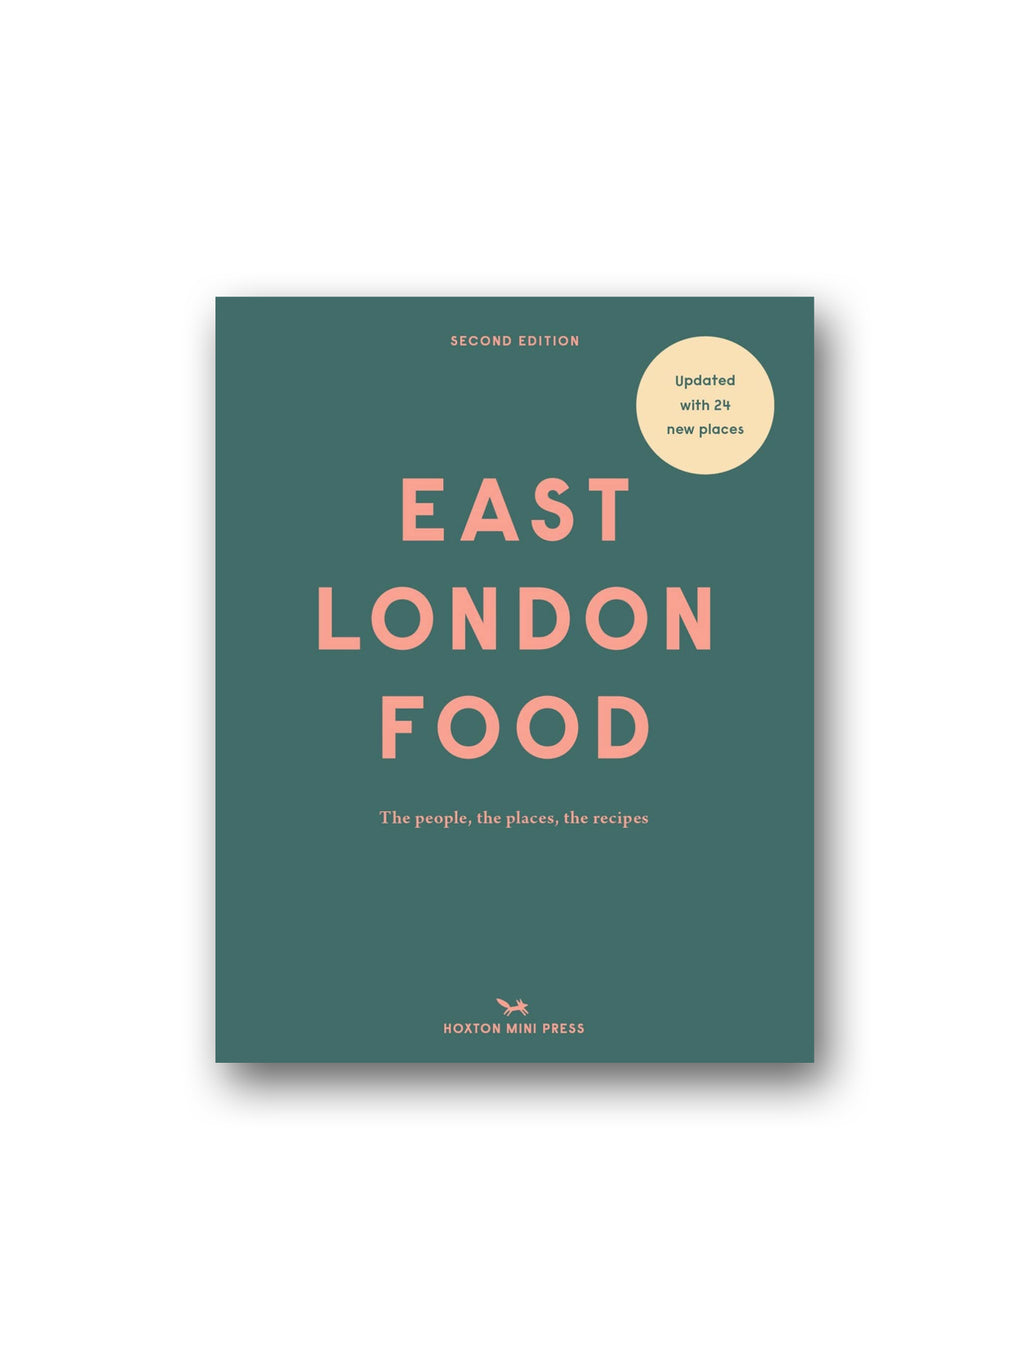 East London Food